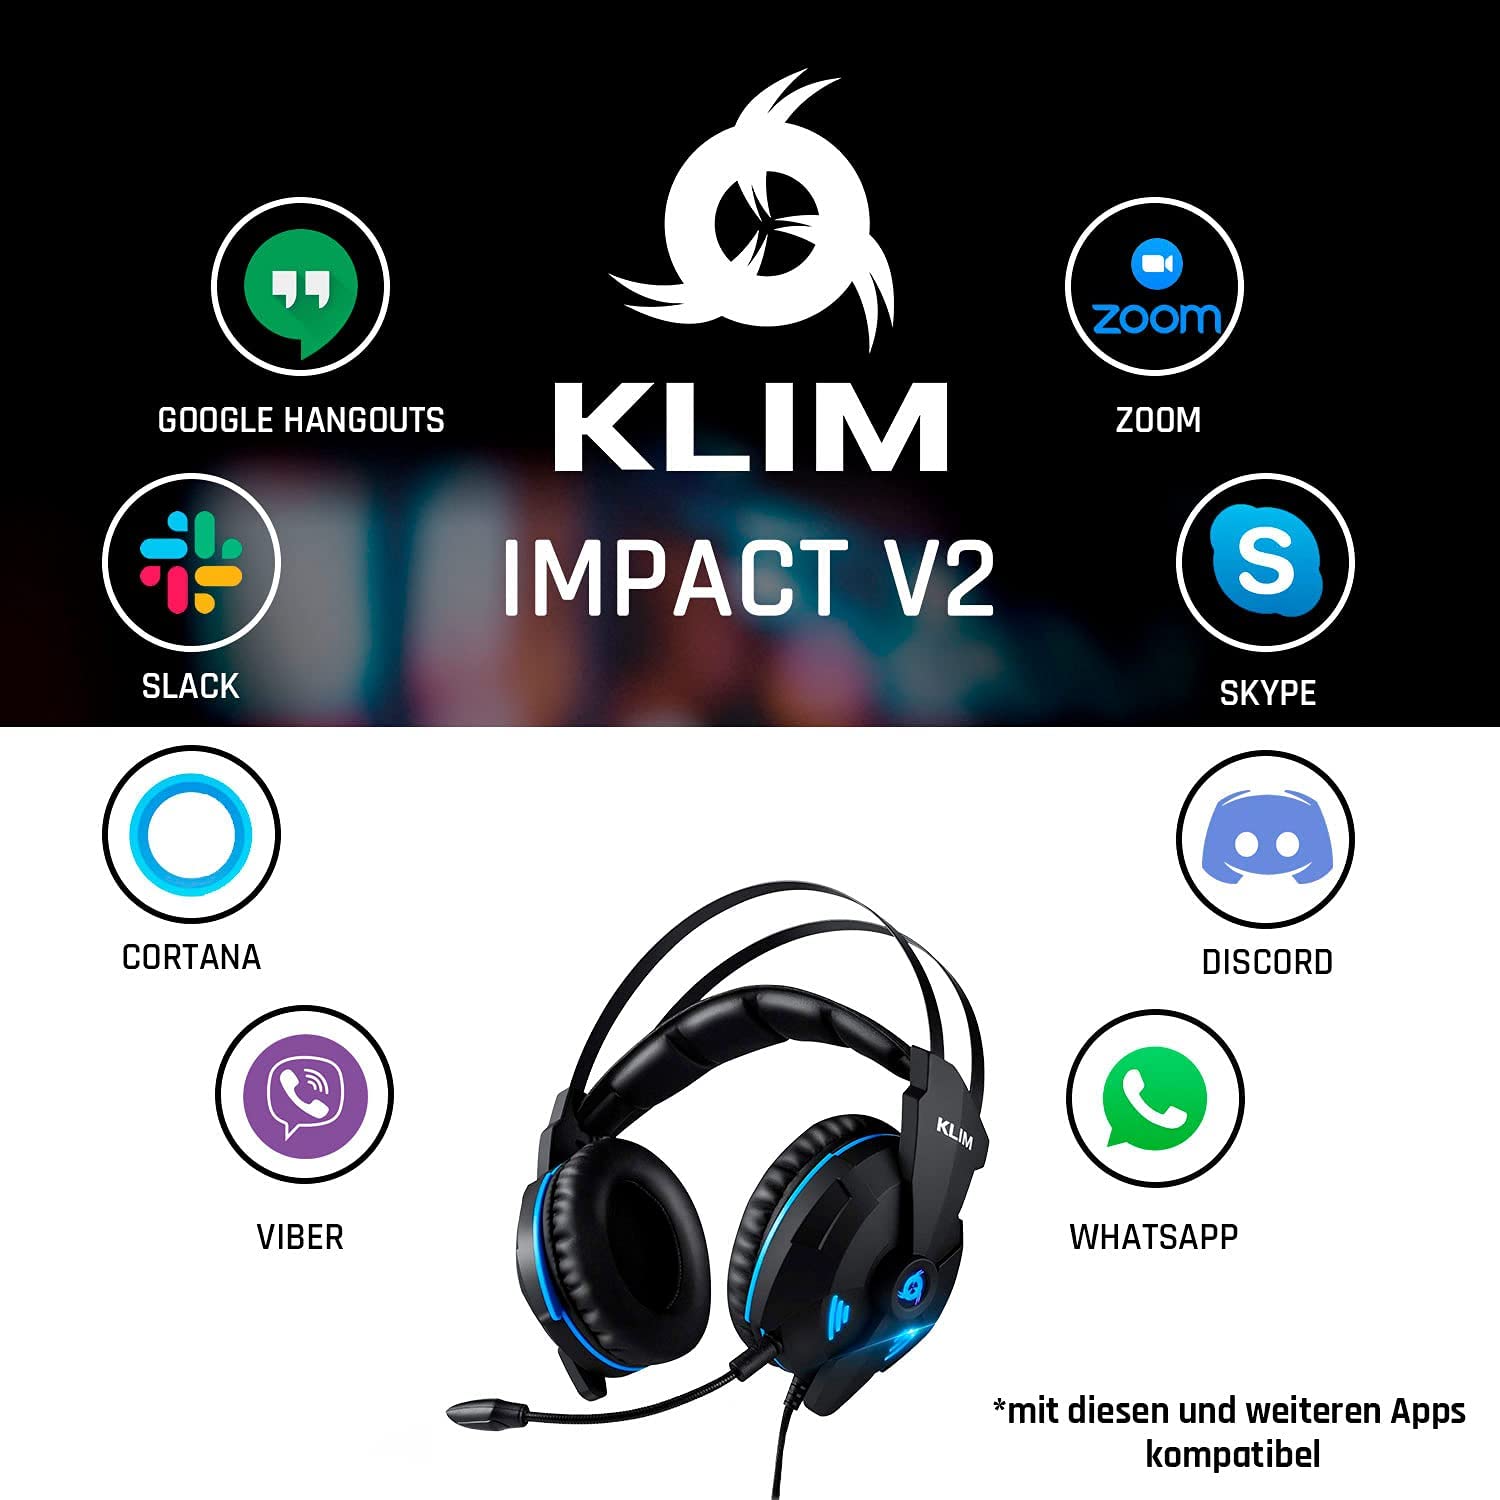 KLIM Impact V2 Gaming Headset